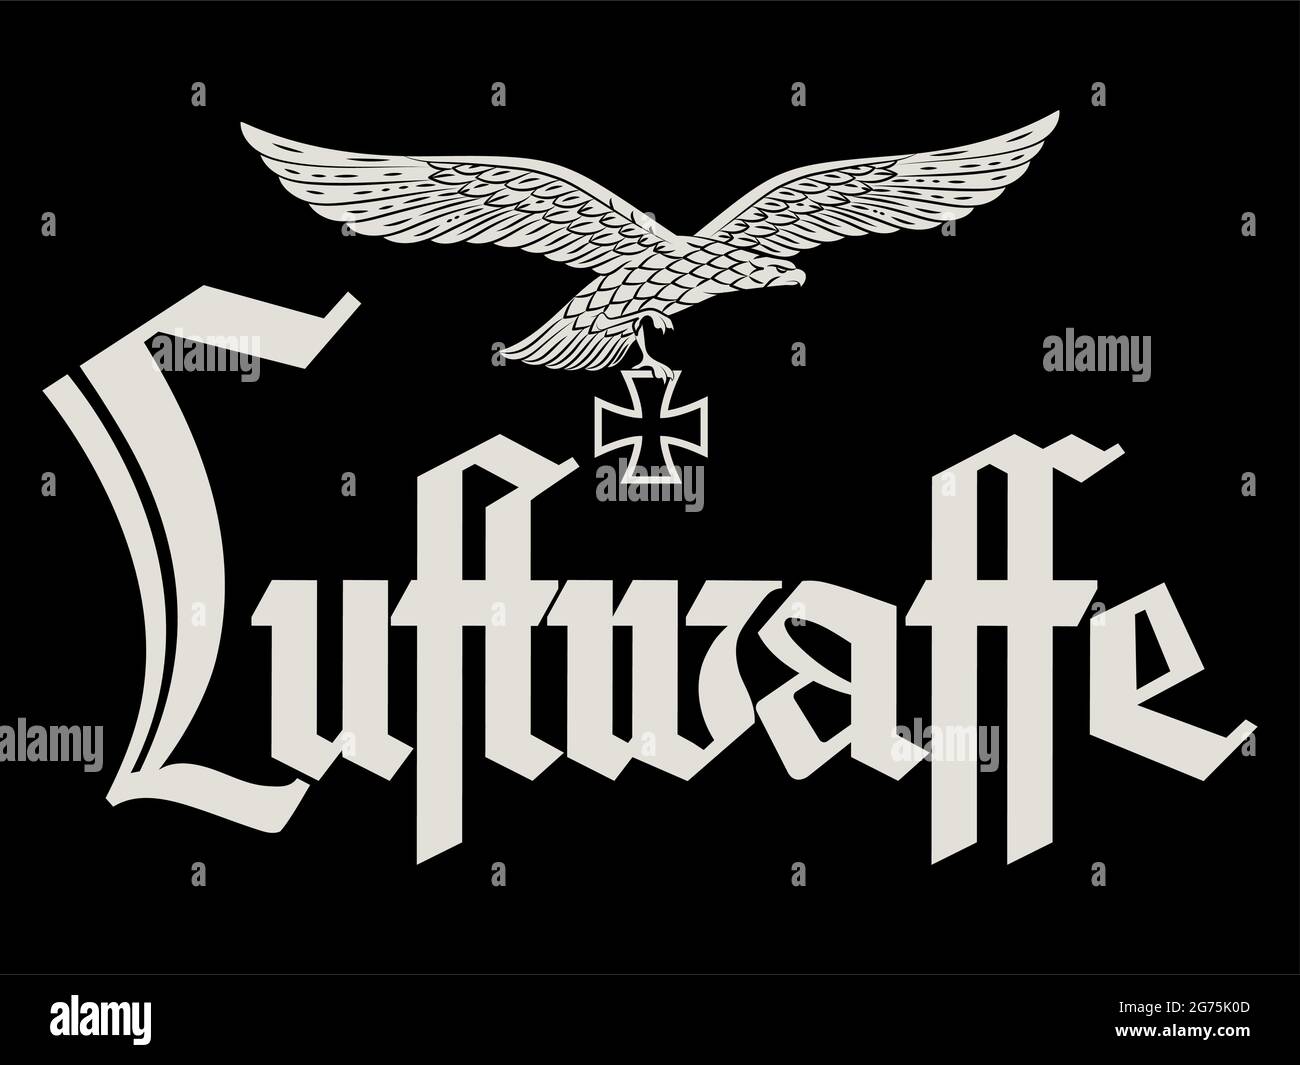 Entworfen von der deutschen Luftwaffe. Wappentier, Eisenkreuz und die Inschrift der Luftwaffe, ins Englische übersetzt - Luftwaffe Stock Vektor